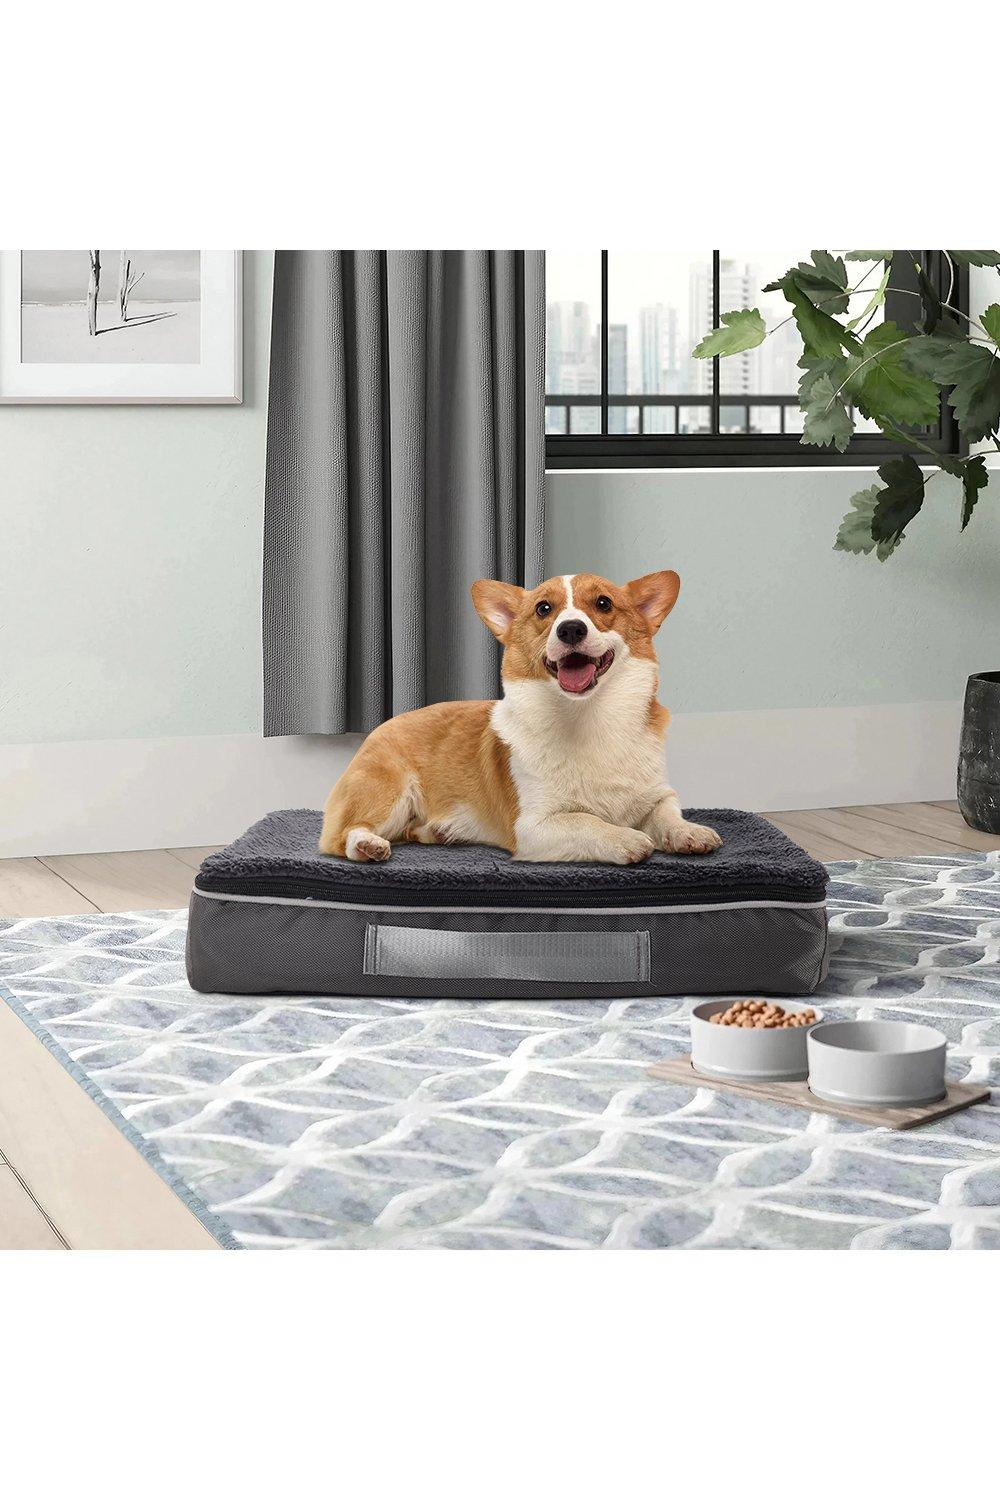 75cm W x 50cm D x 10cm H Washable Pet Bed with Plush Mat